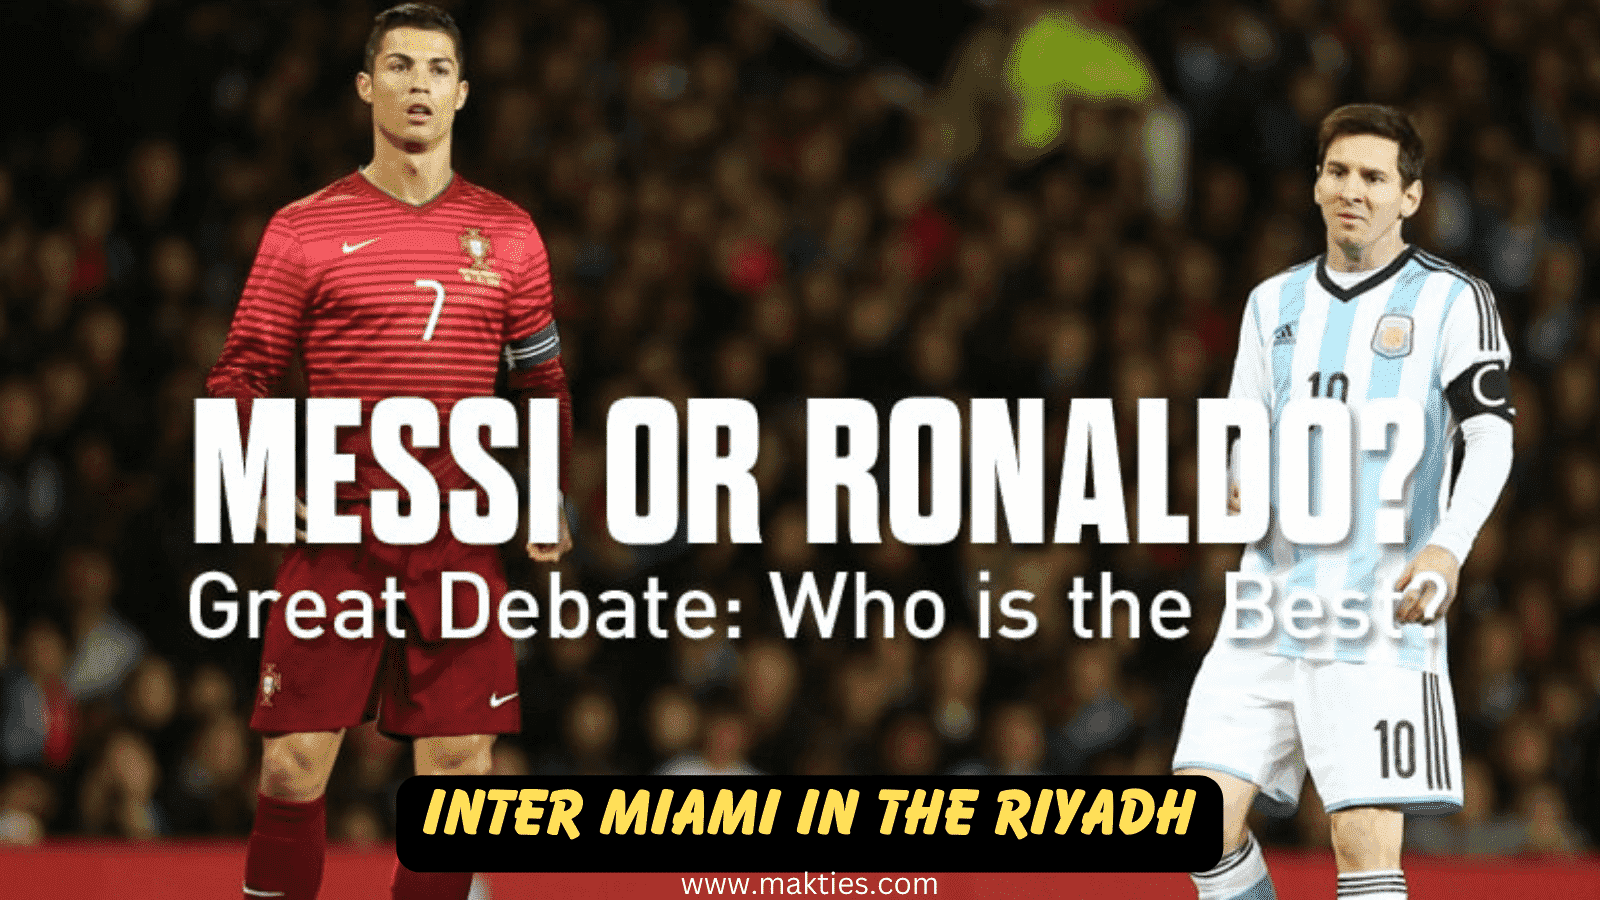 Will Cristiano Ronaldo play vs Lionel Messi & Inter Miami in the Riyadh